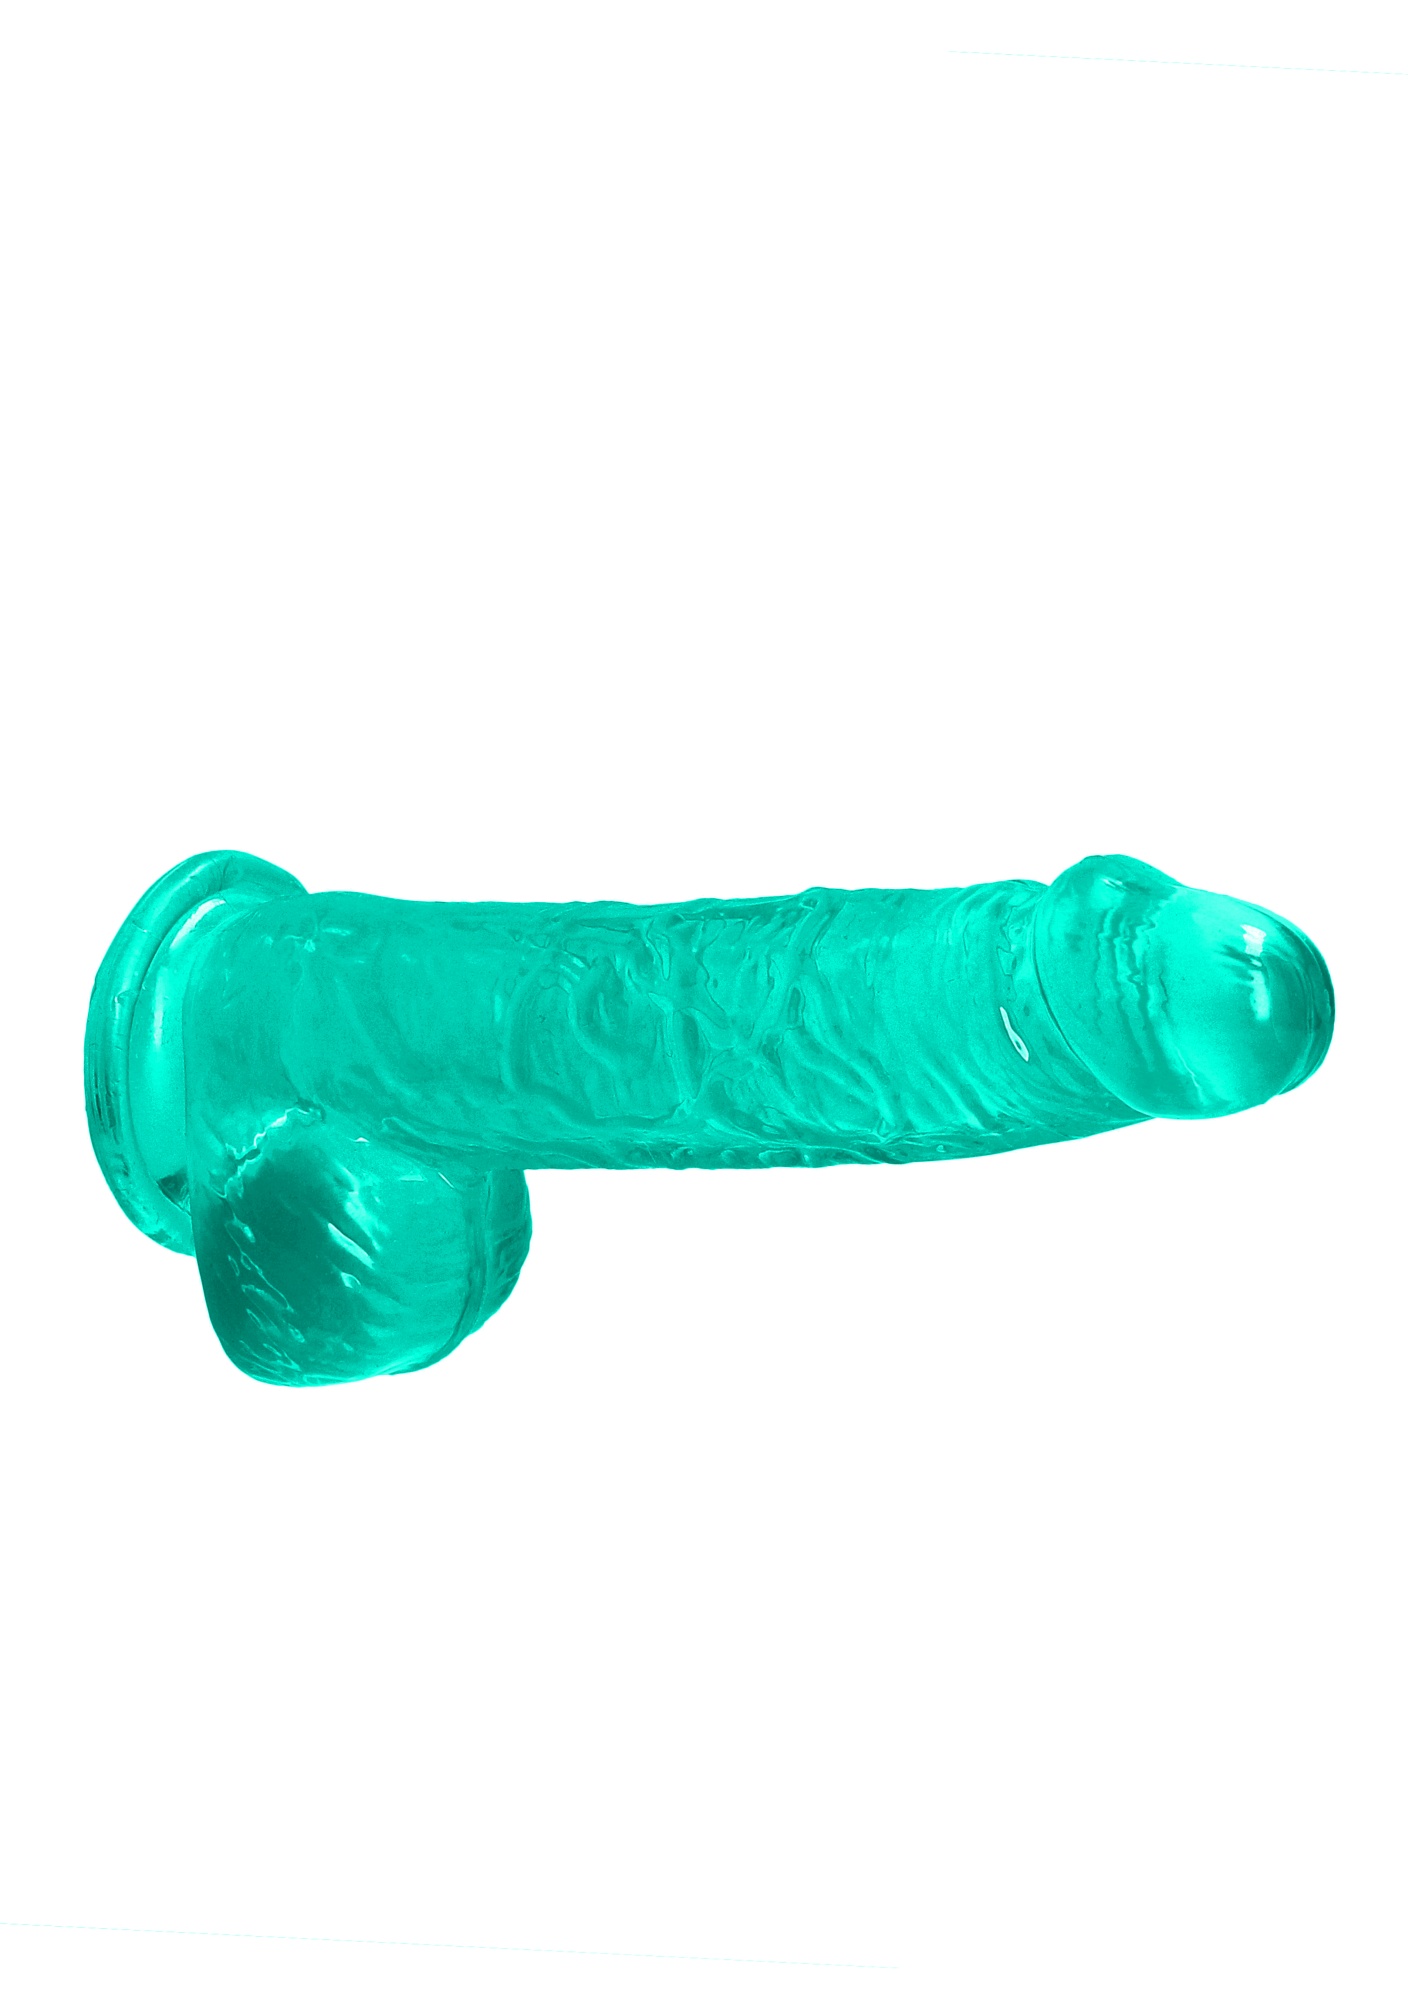 Zielone dildo do penetracji pochwy i anusa 17 cm